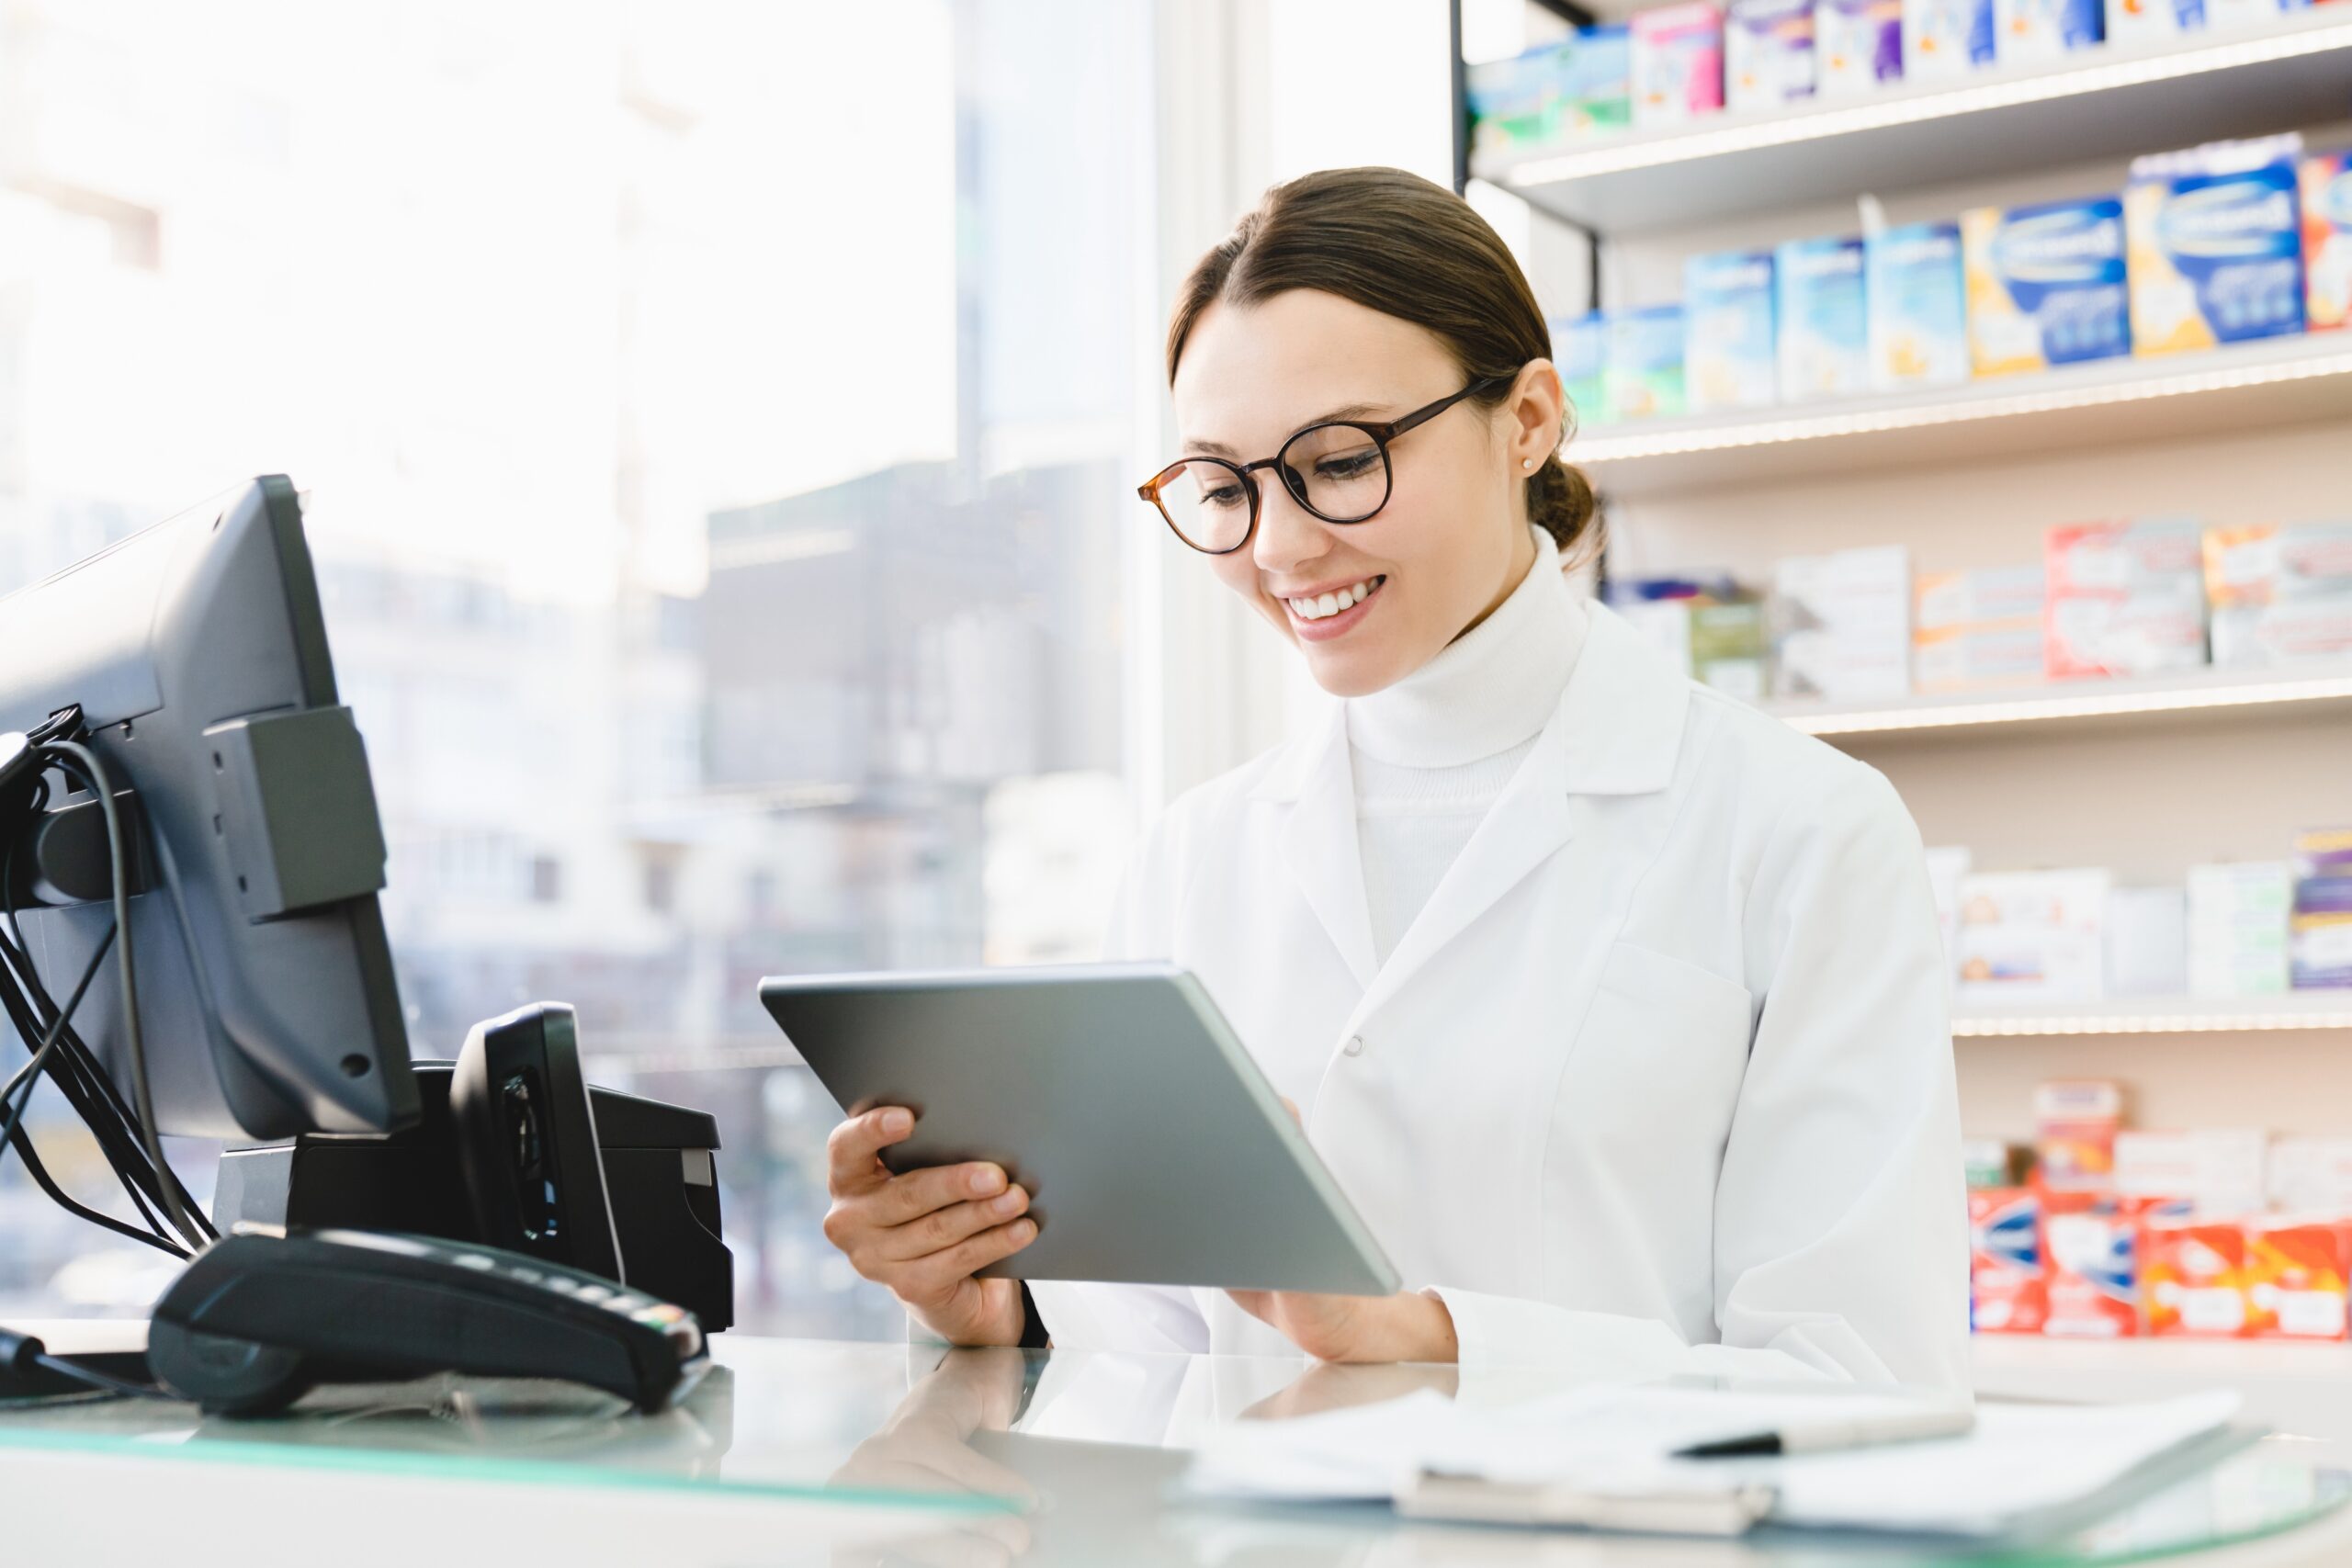 La farmacia puede ser más asistencial y eficiente gracias a la digitalización